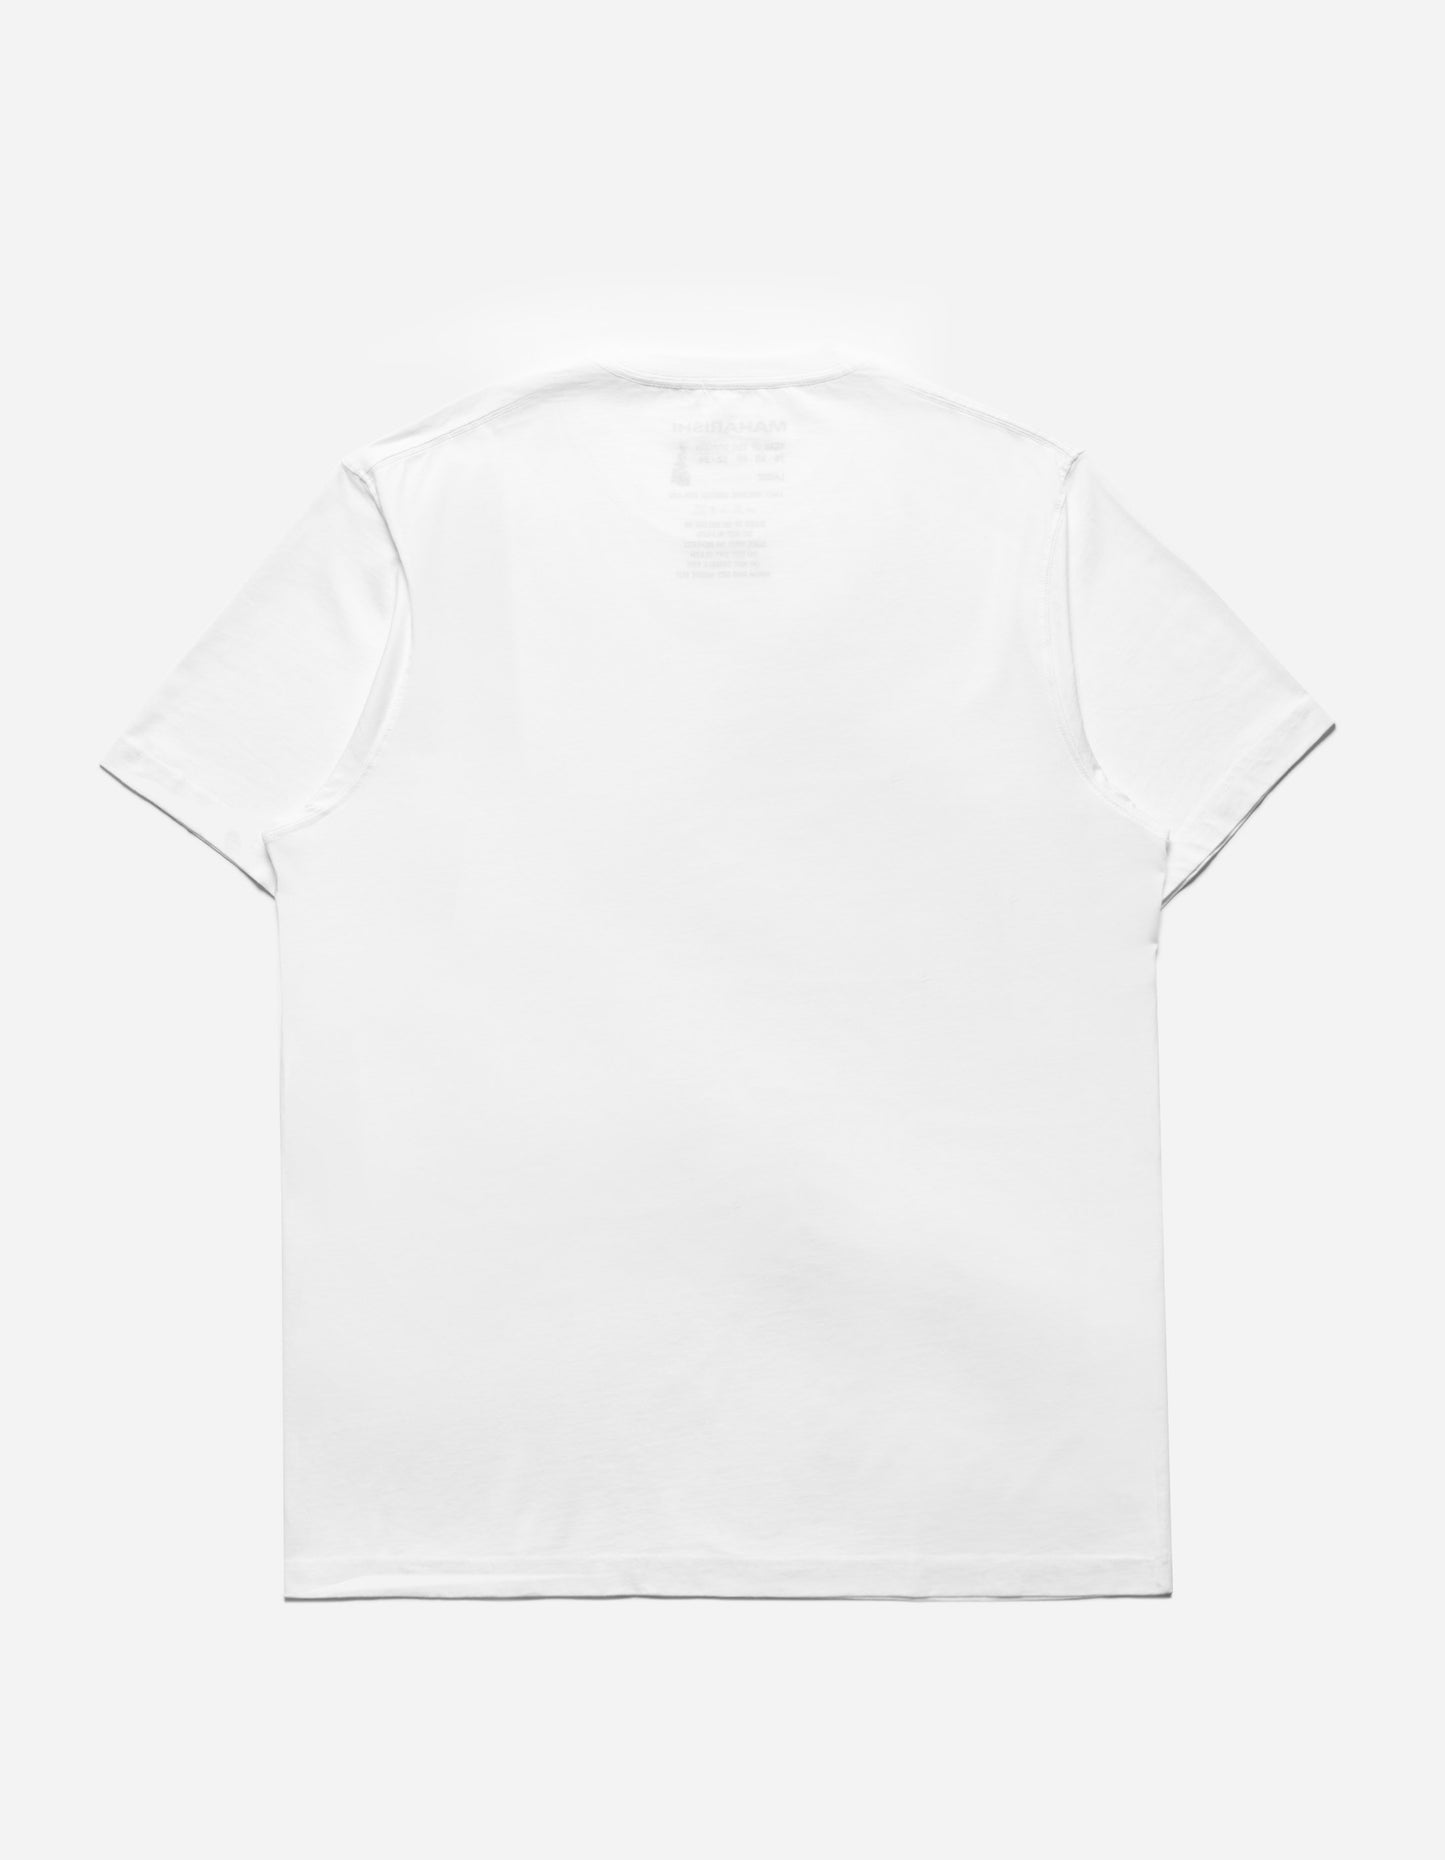 1307 Micro Maharishi T-Shirt White